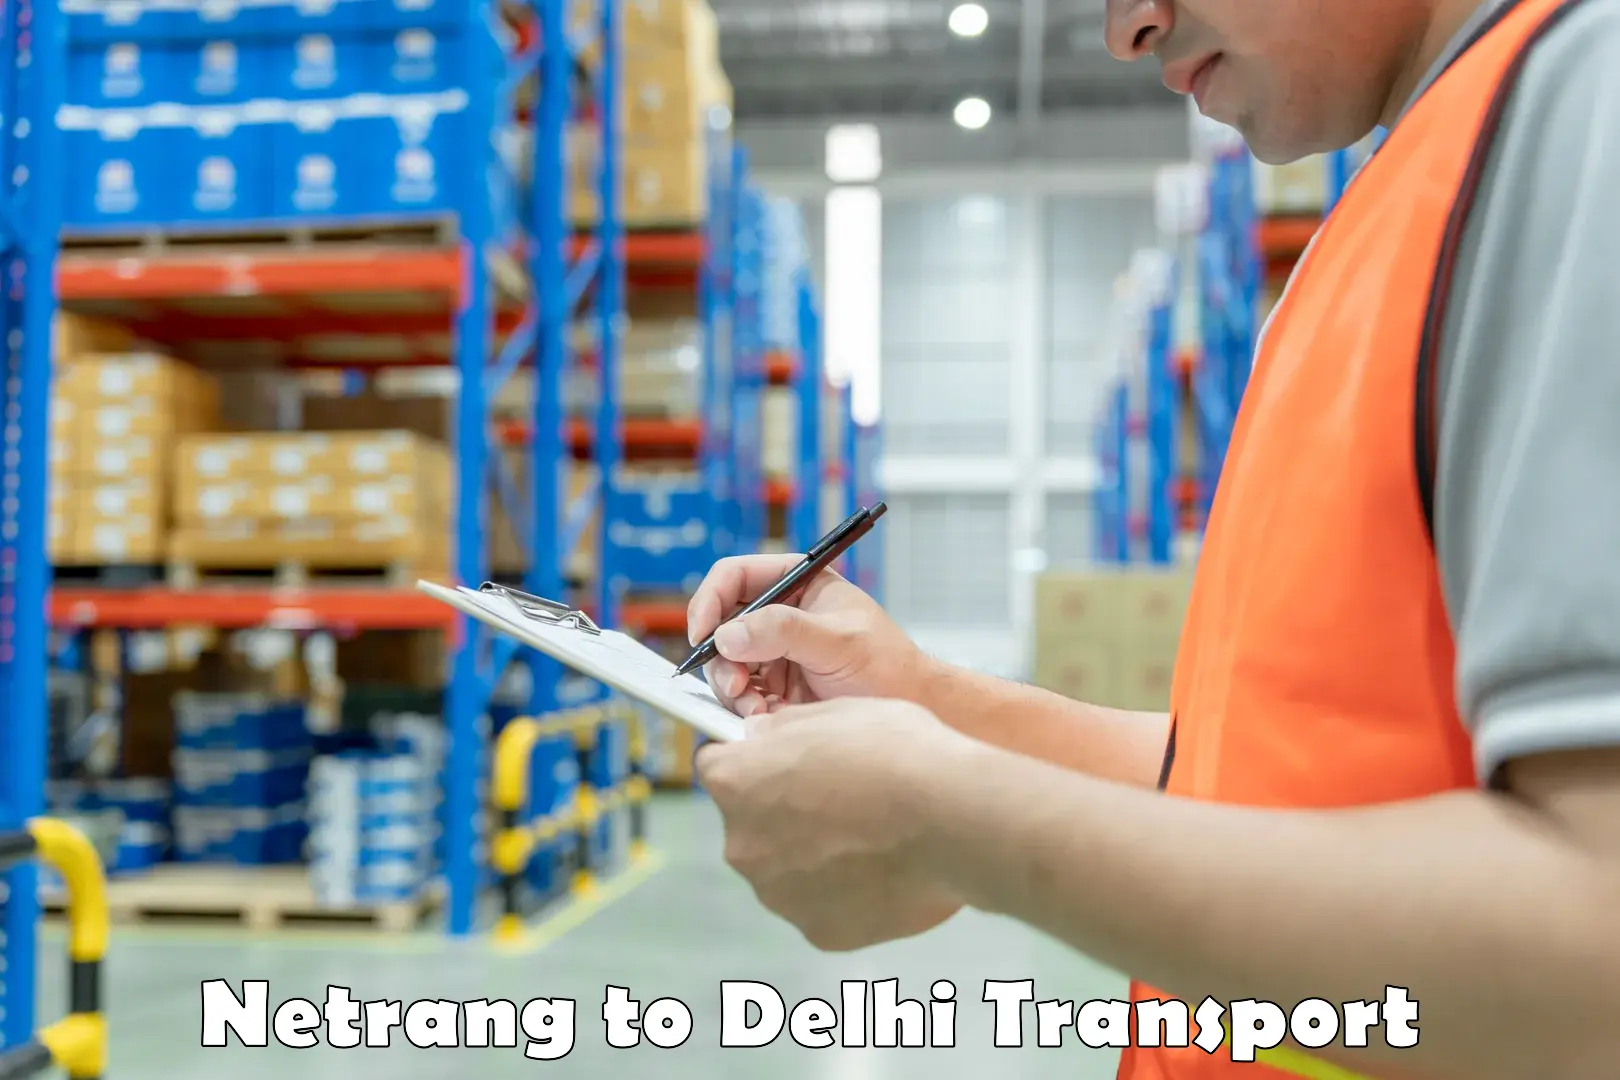 Express transport services Netrang to Delhi